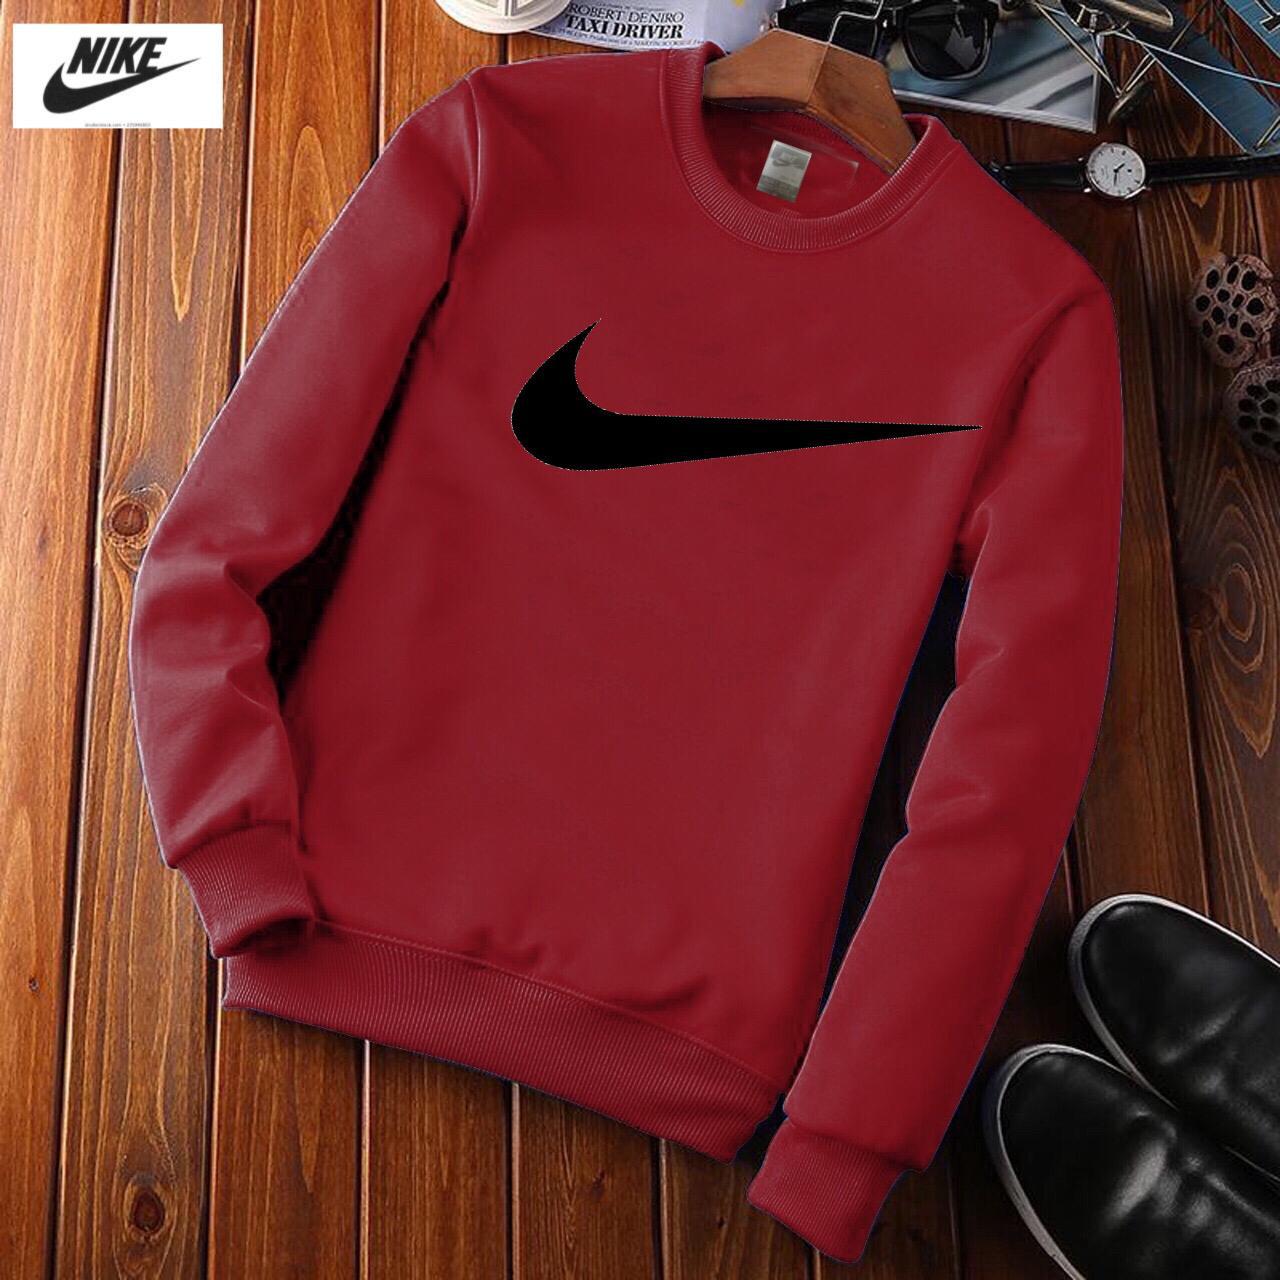 Nike Red Sweat Shirts